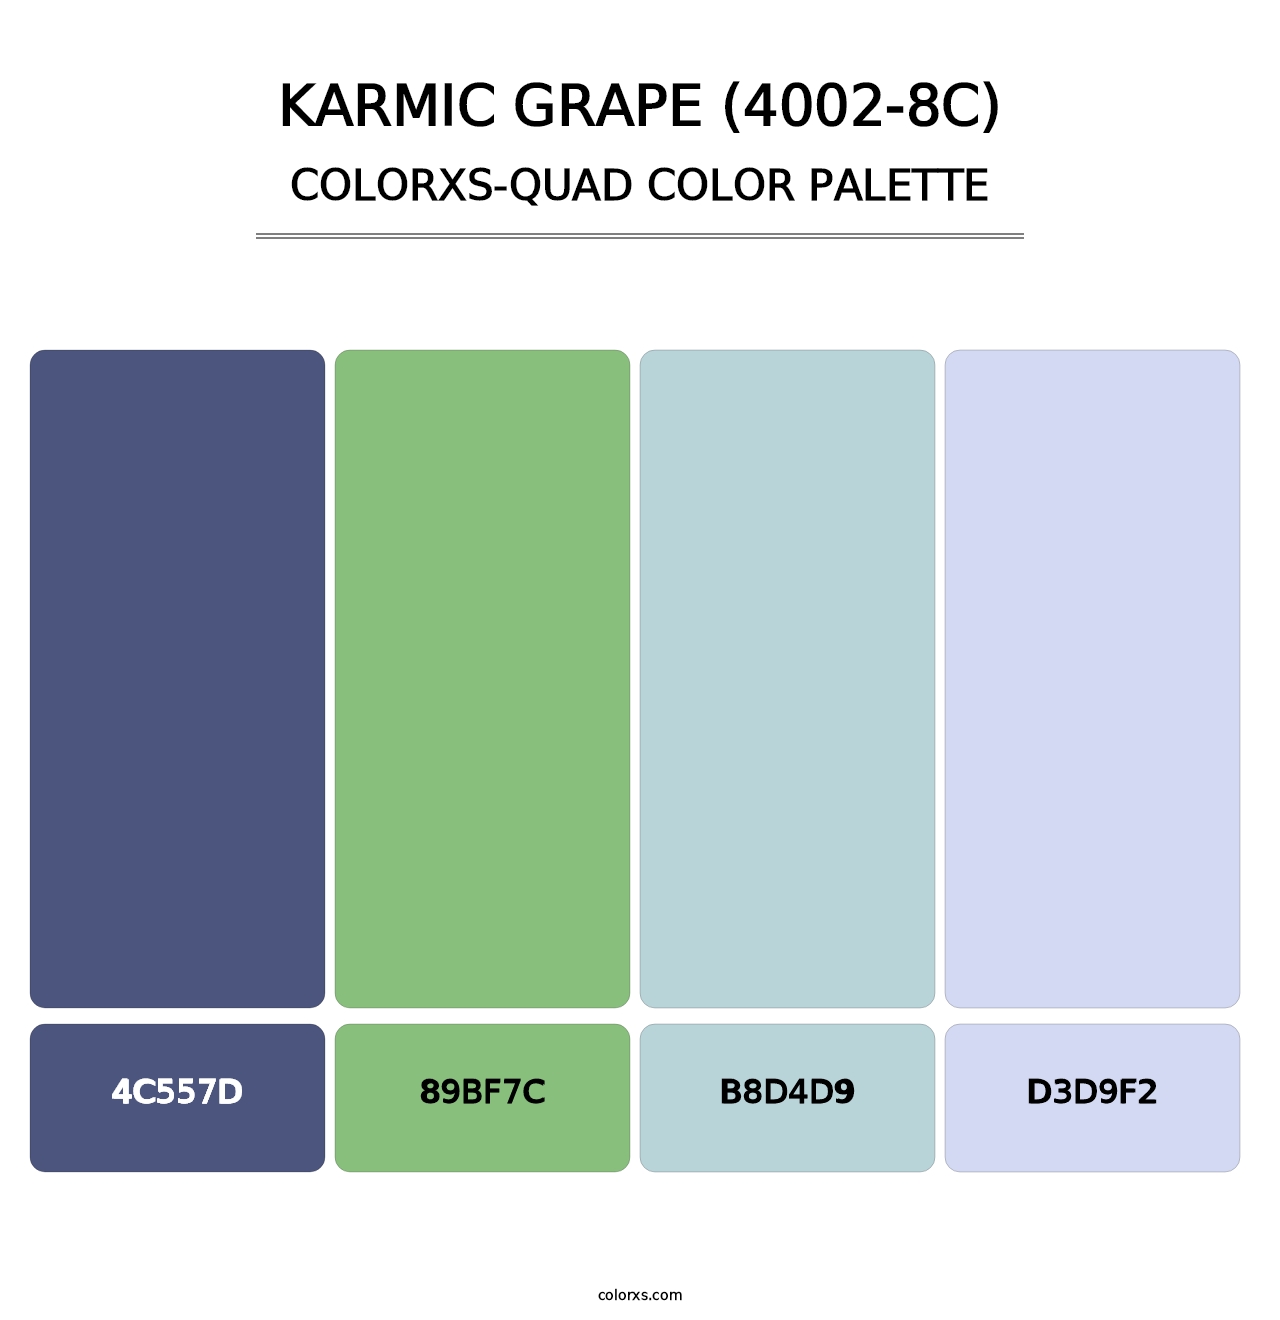 Karmic Grape (4002-8C) - Colorxs Quad Palette